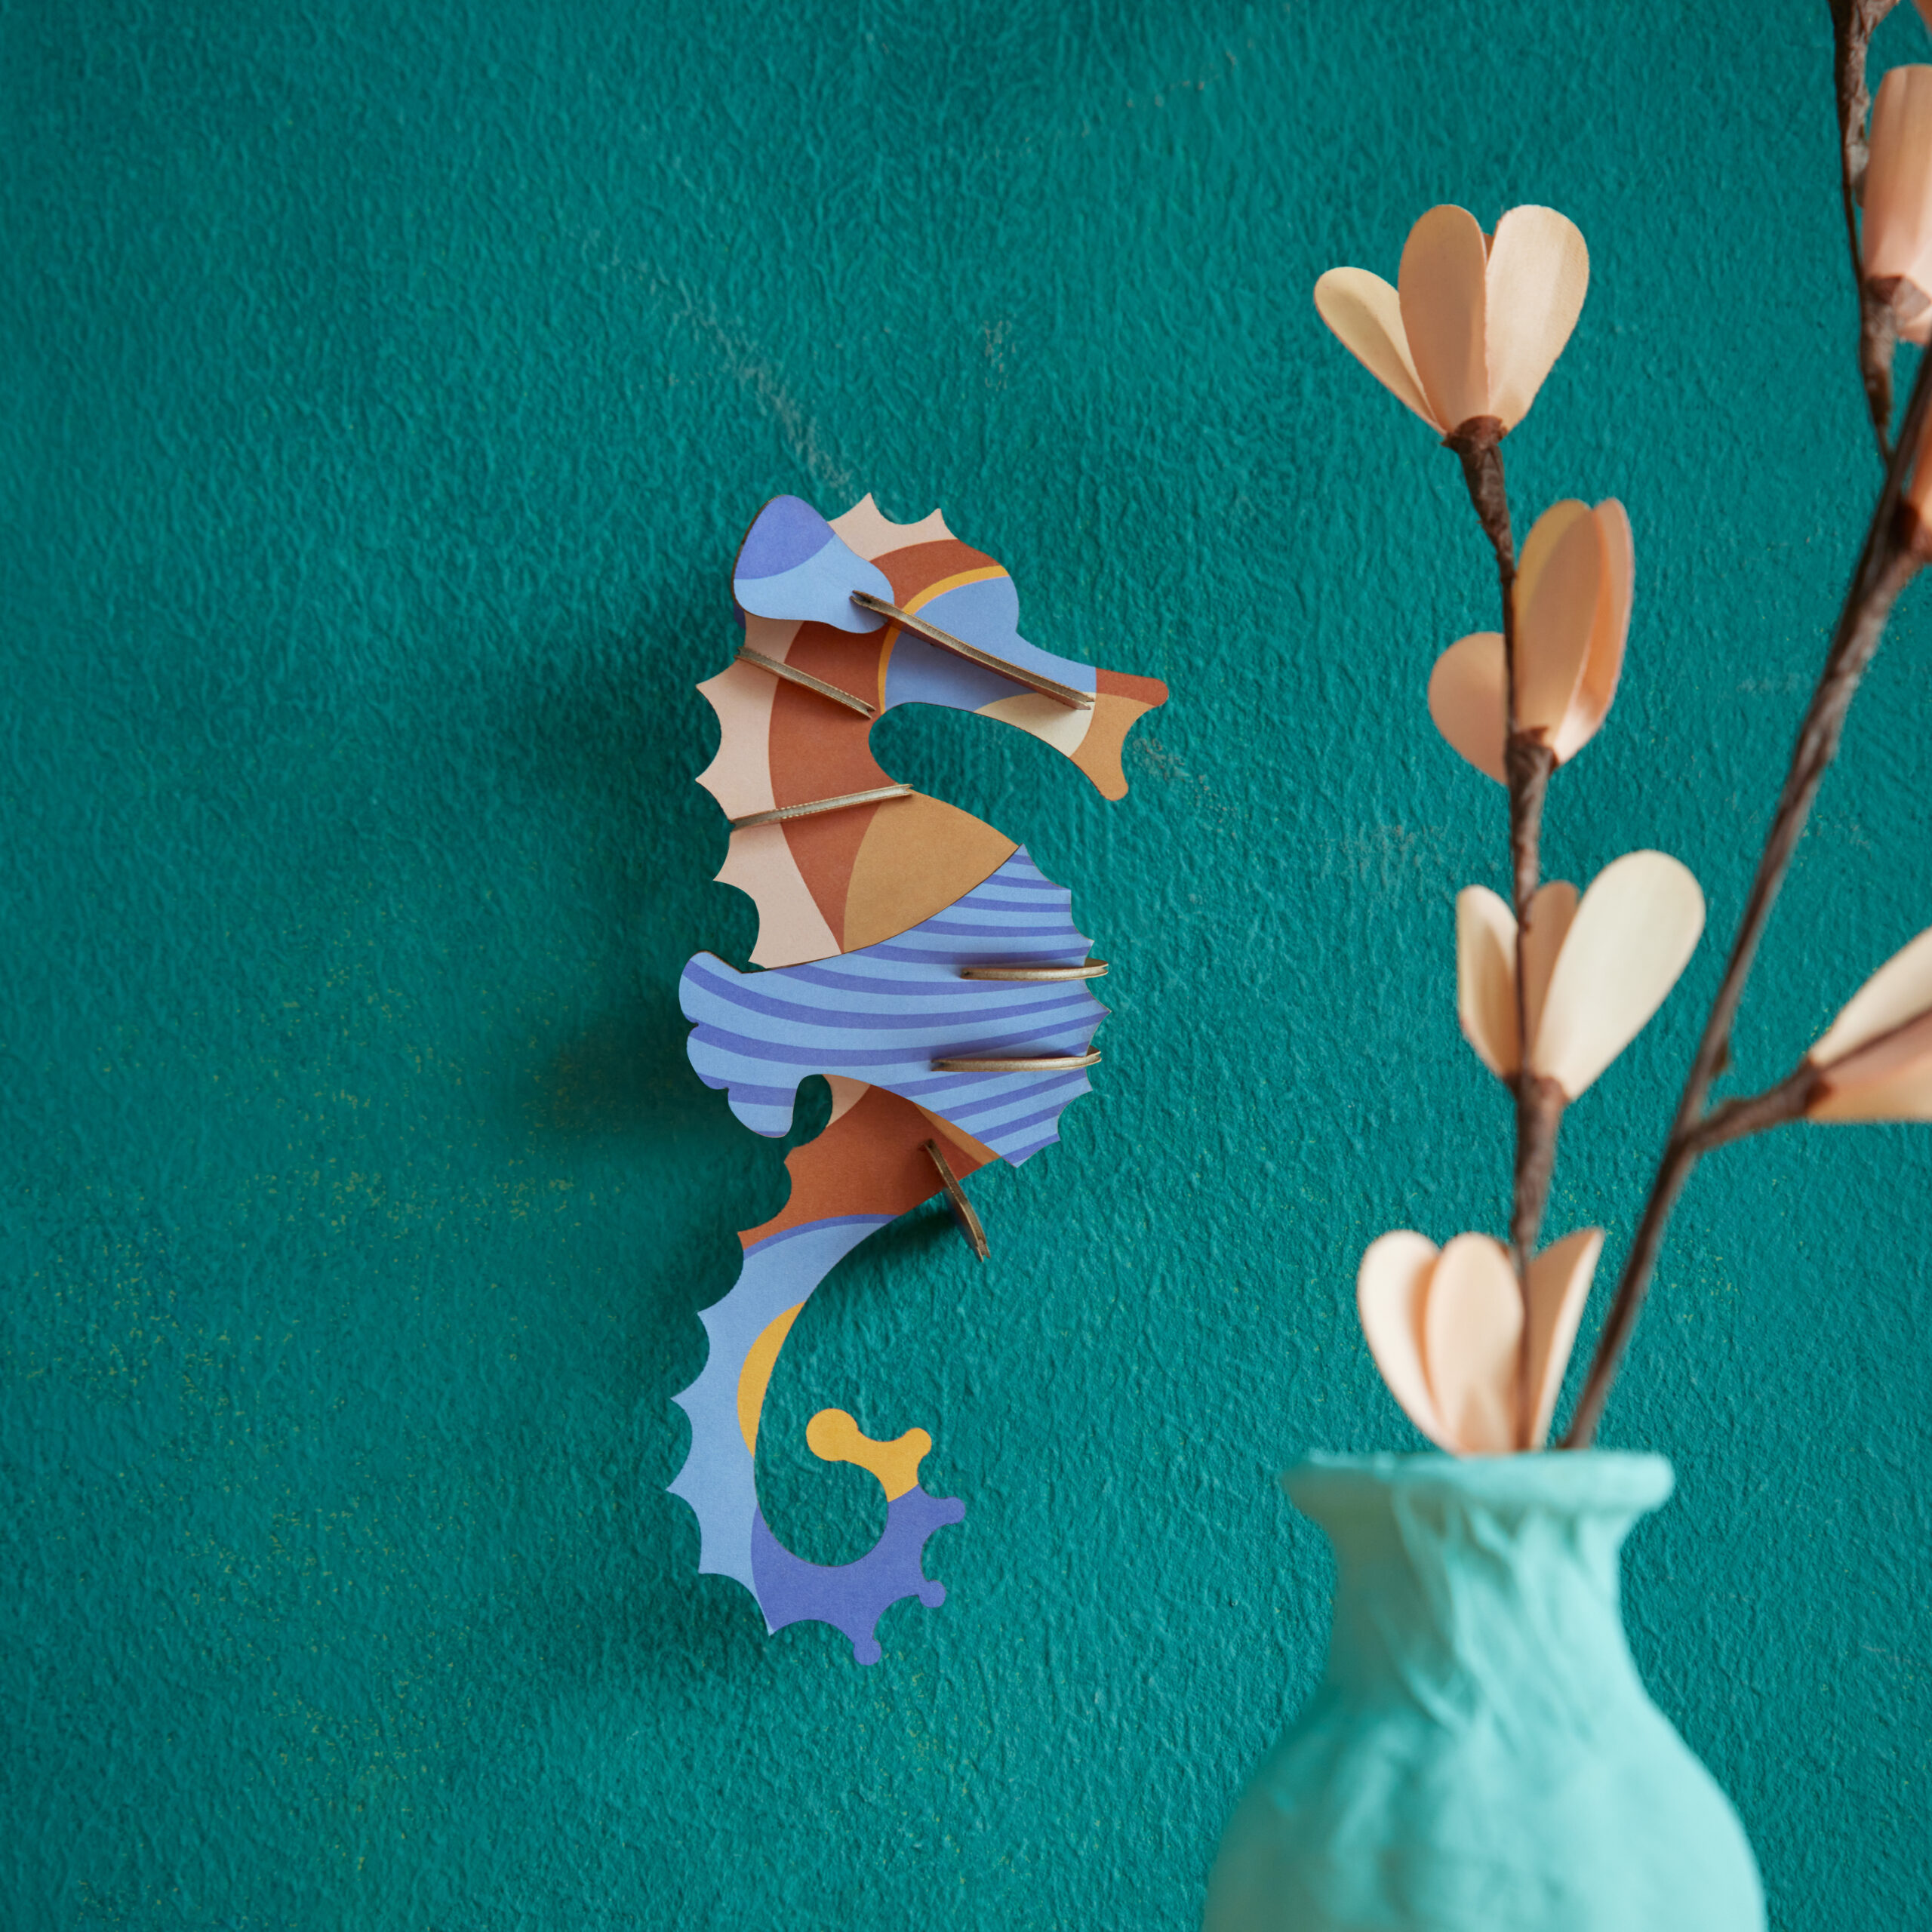 Blue Singlet Seahorse - Blaues Seepferdchen aus Papier in 3D als Wanddekoration von der Firma studio Roof auf grünem Hintergrund